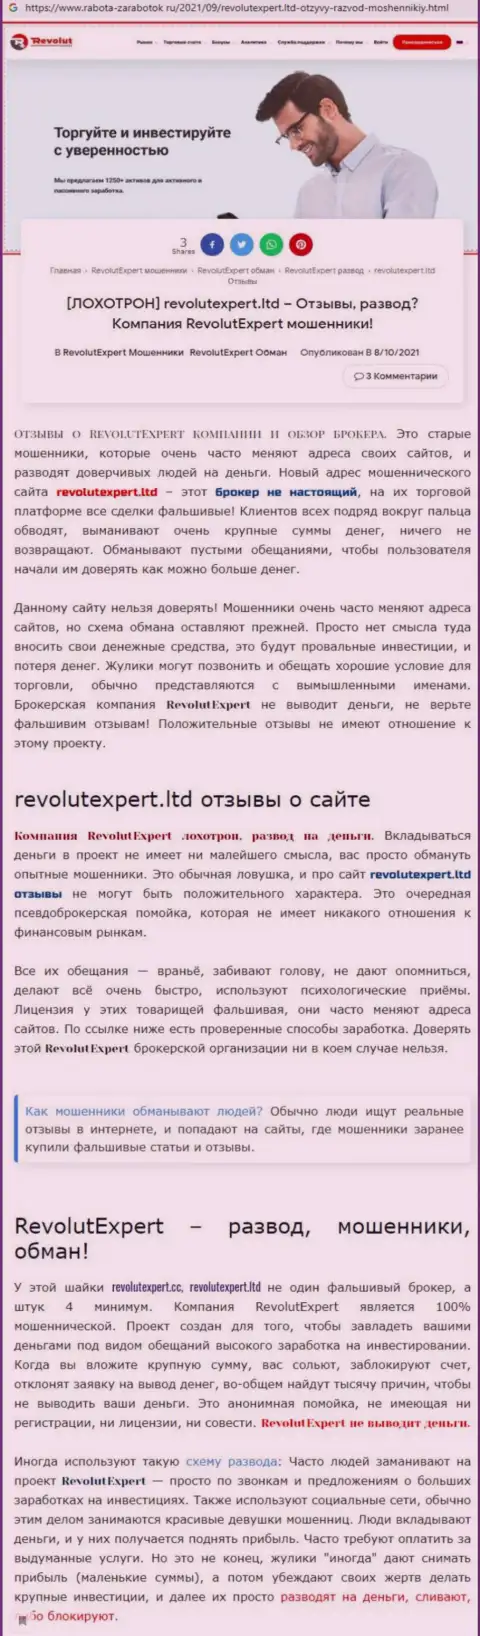 RevolutExpert Ltd - это стопроцентно МОШЕННИКИ !!! Обзор мошеннических действий организации